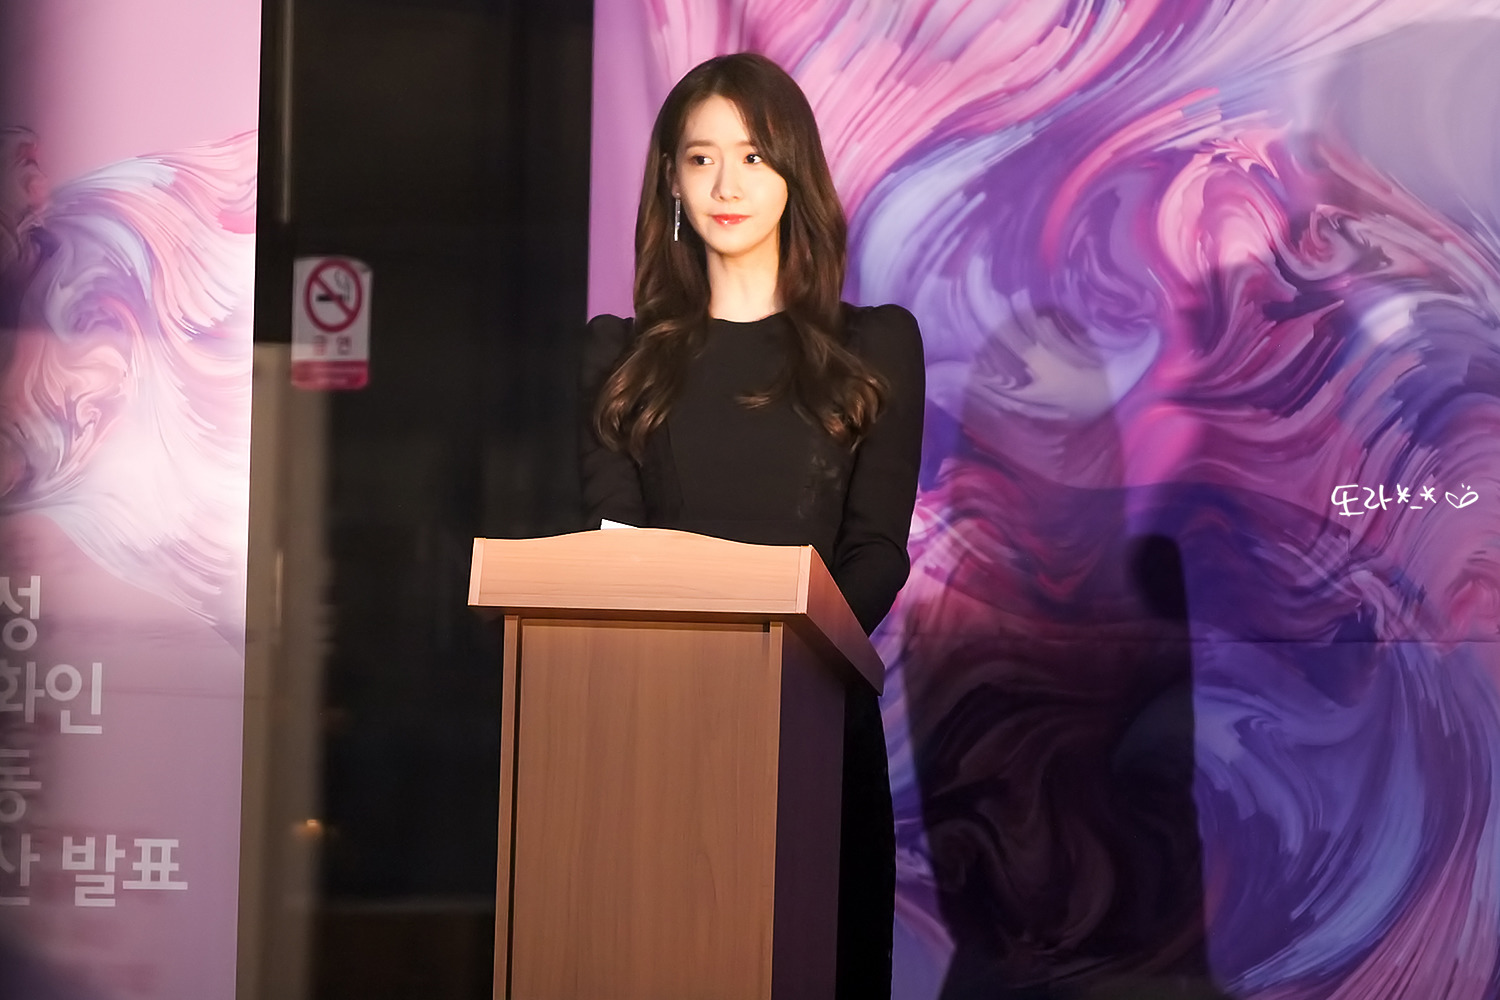 [PIC][07-12-2016]YoonA đảm nhận vai trò MC cho "2016 WOMEN IN FILM KOREA FESTIVAL" tại Art Nine vào tối nay - Page 2 270D3B39592D4BD00AC61B